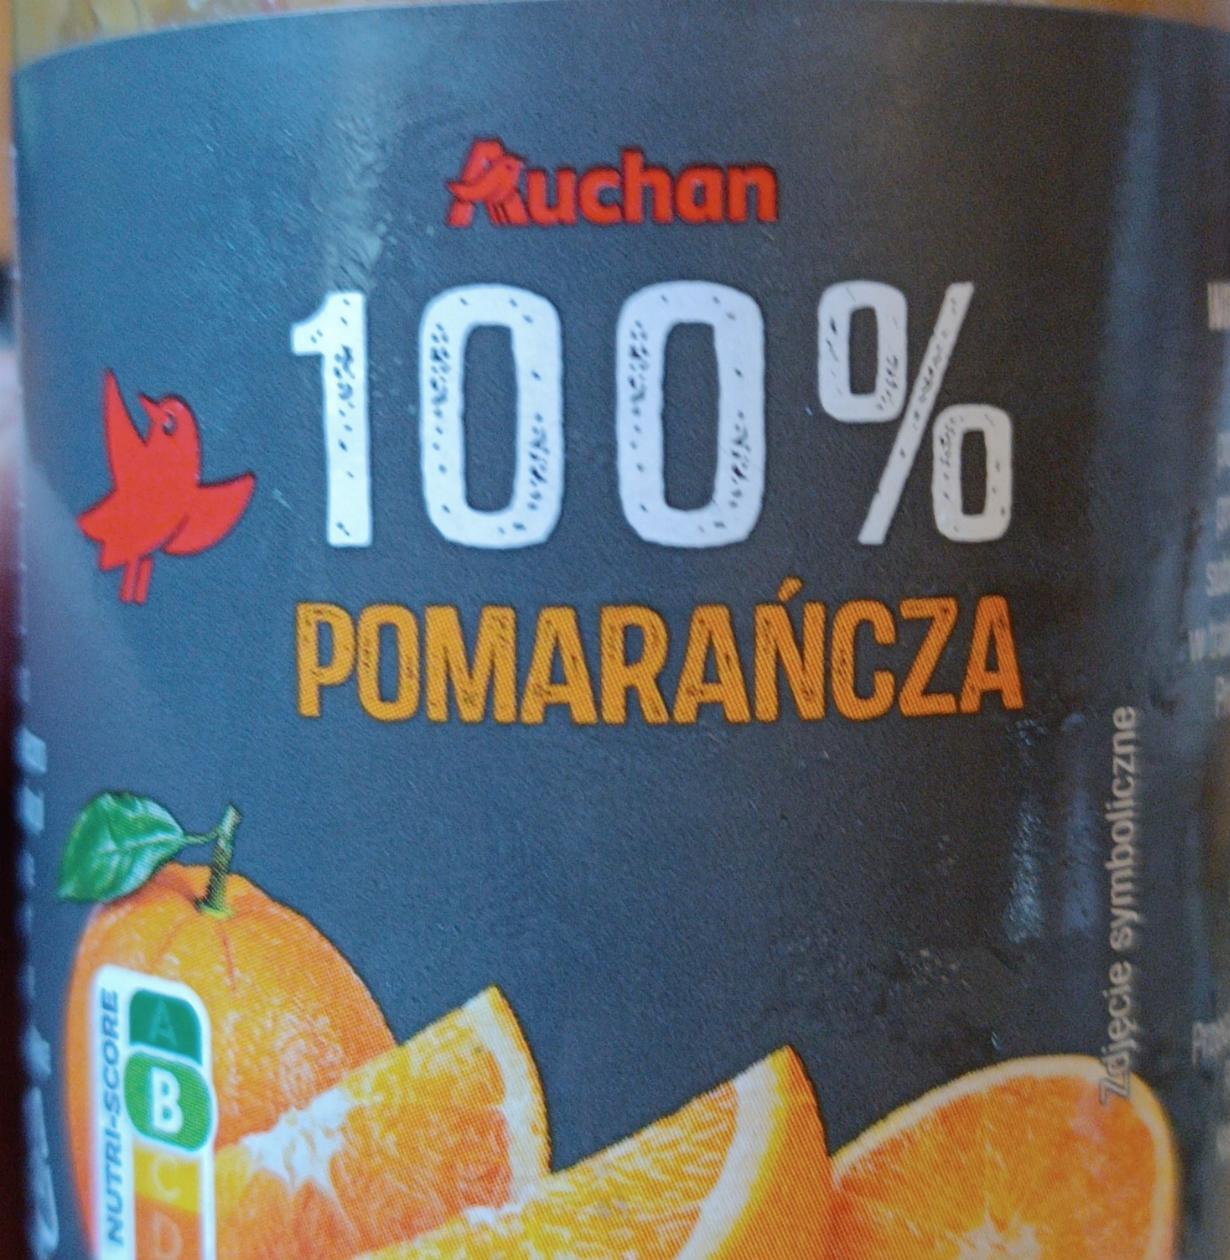 Zdjęcia - 100% pomarańcza Auchan